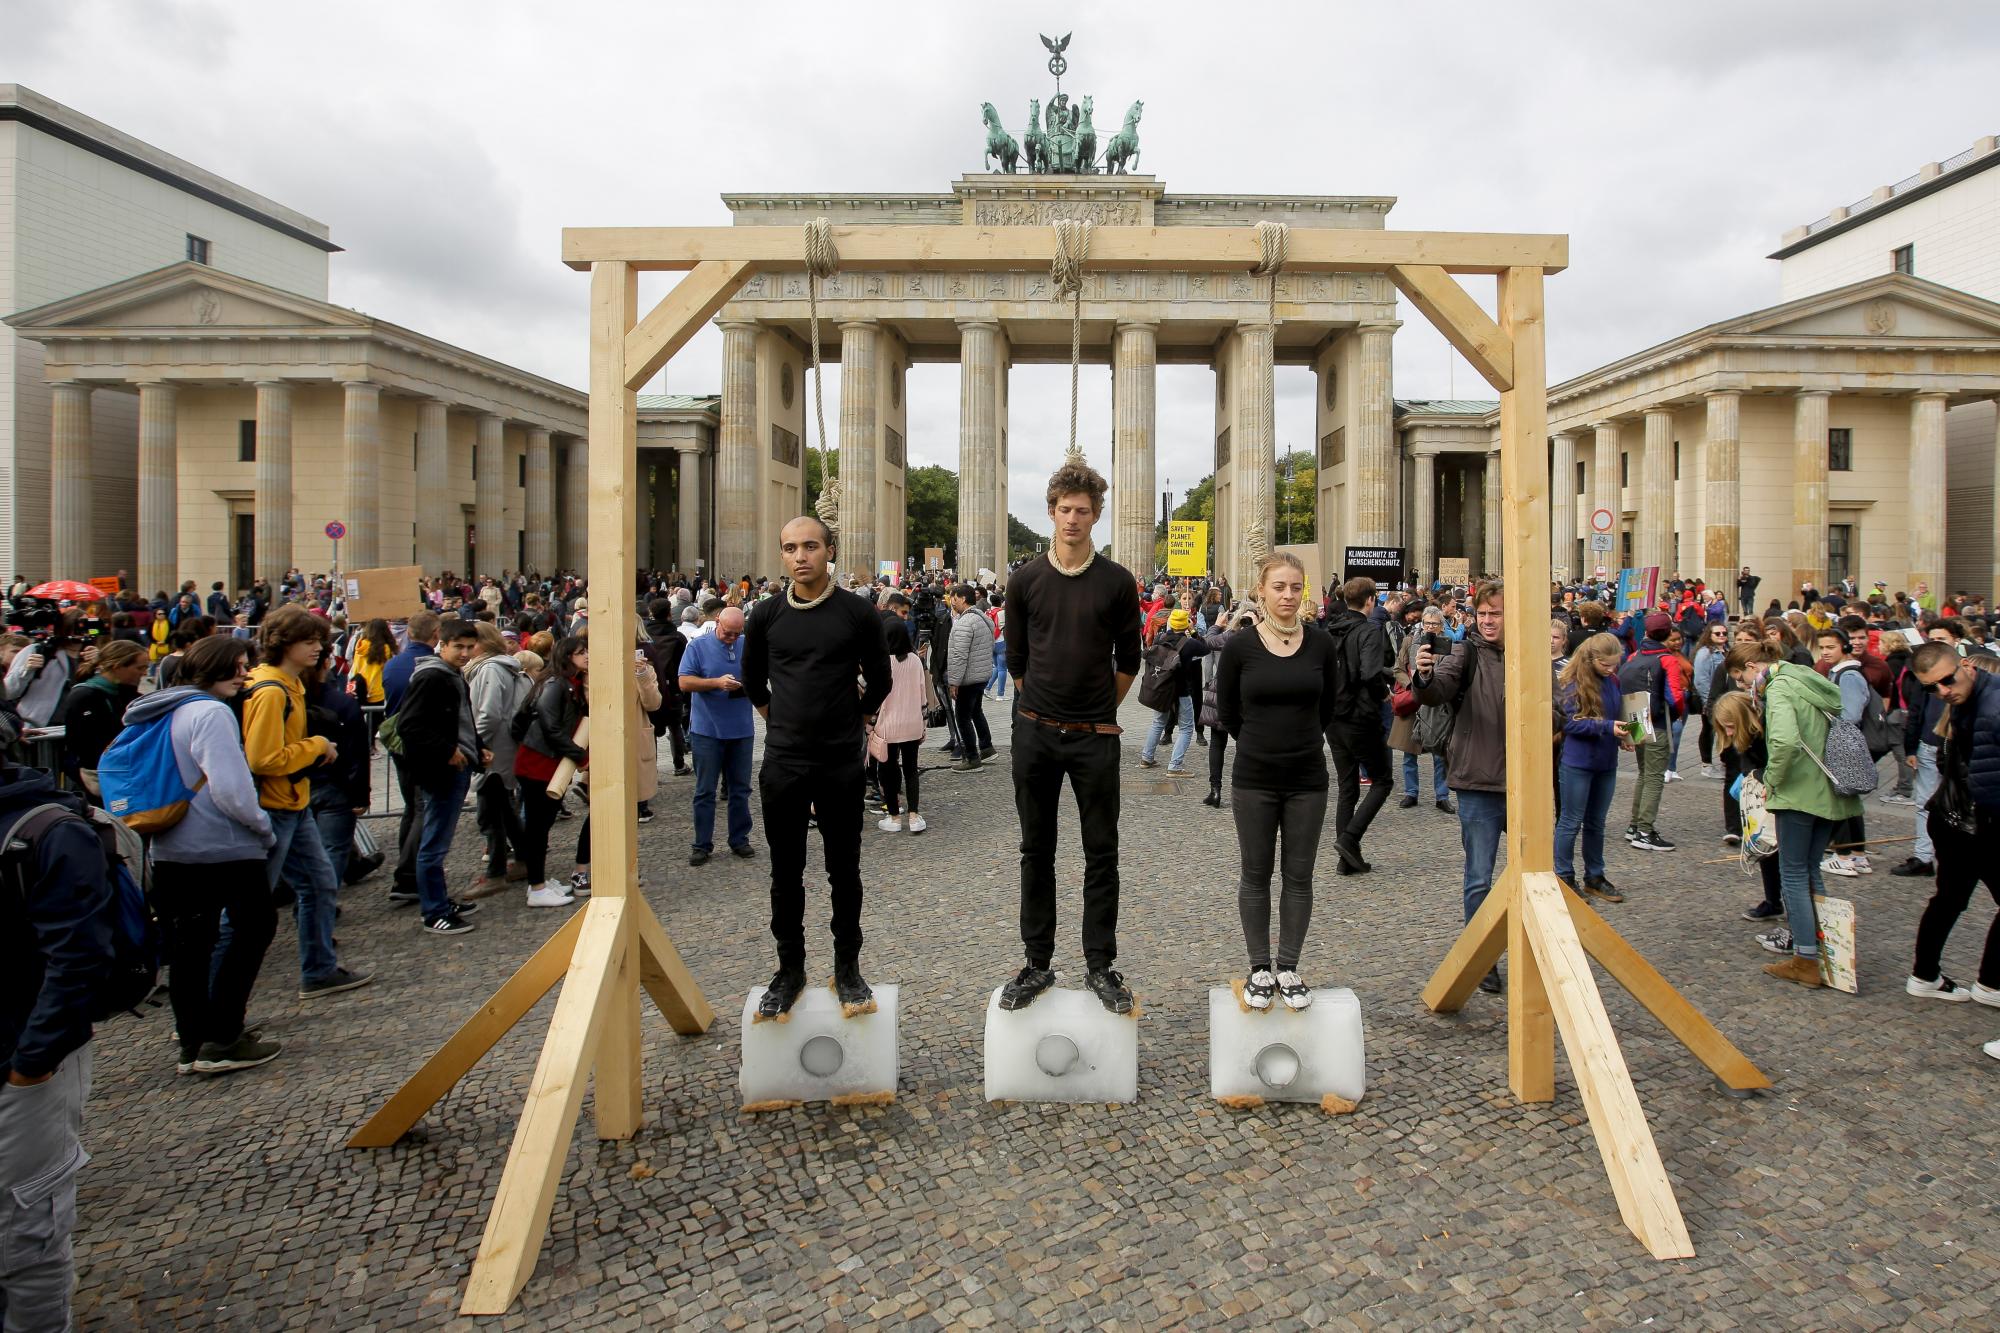 Tres personas se paran en bloques de hielo debajo de la horca para protestar contra la política climática antes de una protesta climática ‘Viernes para el futuro’ frente a la Puerta de Brandenburgo en Berlín, Alemania, el viernes 20 de septiembre de 2019. Protestas del ‘Viernes para el Futuro’ El movimiento contra el aumento de las emisiones de dióxido de carbono está previsto el viernes en ciudades de todo el mundo. En los Estados Unidos se planearon más de 800 eventos el viernes, mientras que en Alemania se esperan más de 400 manifestaciones. 